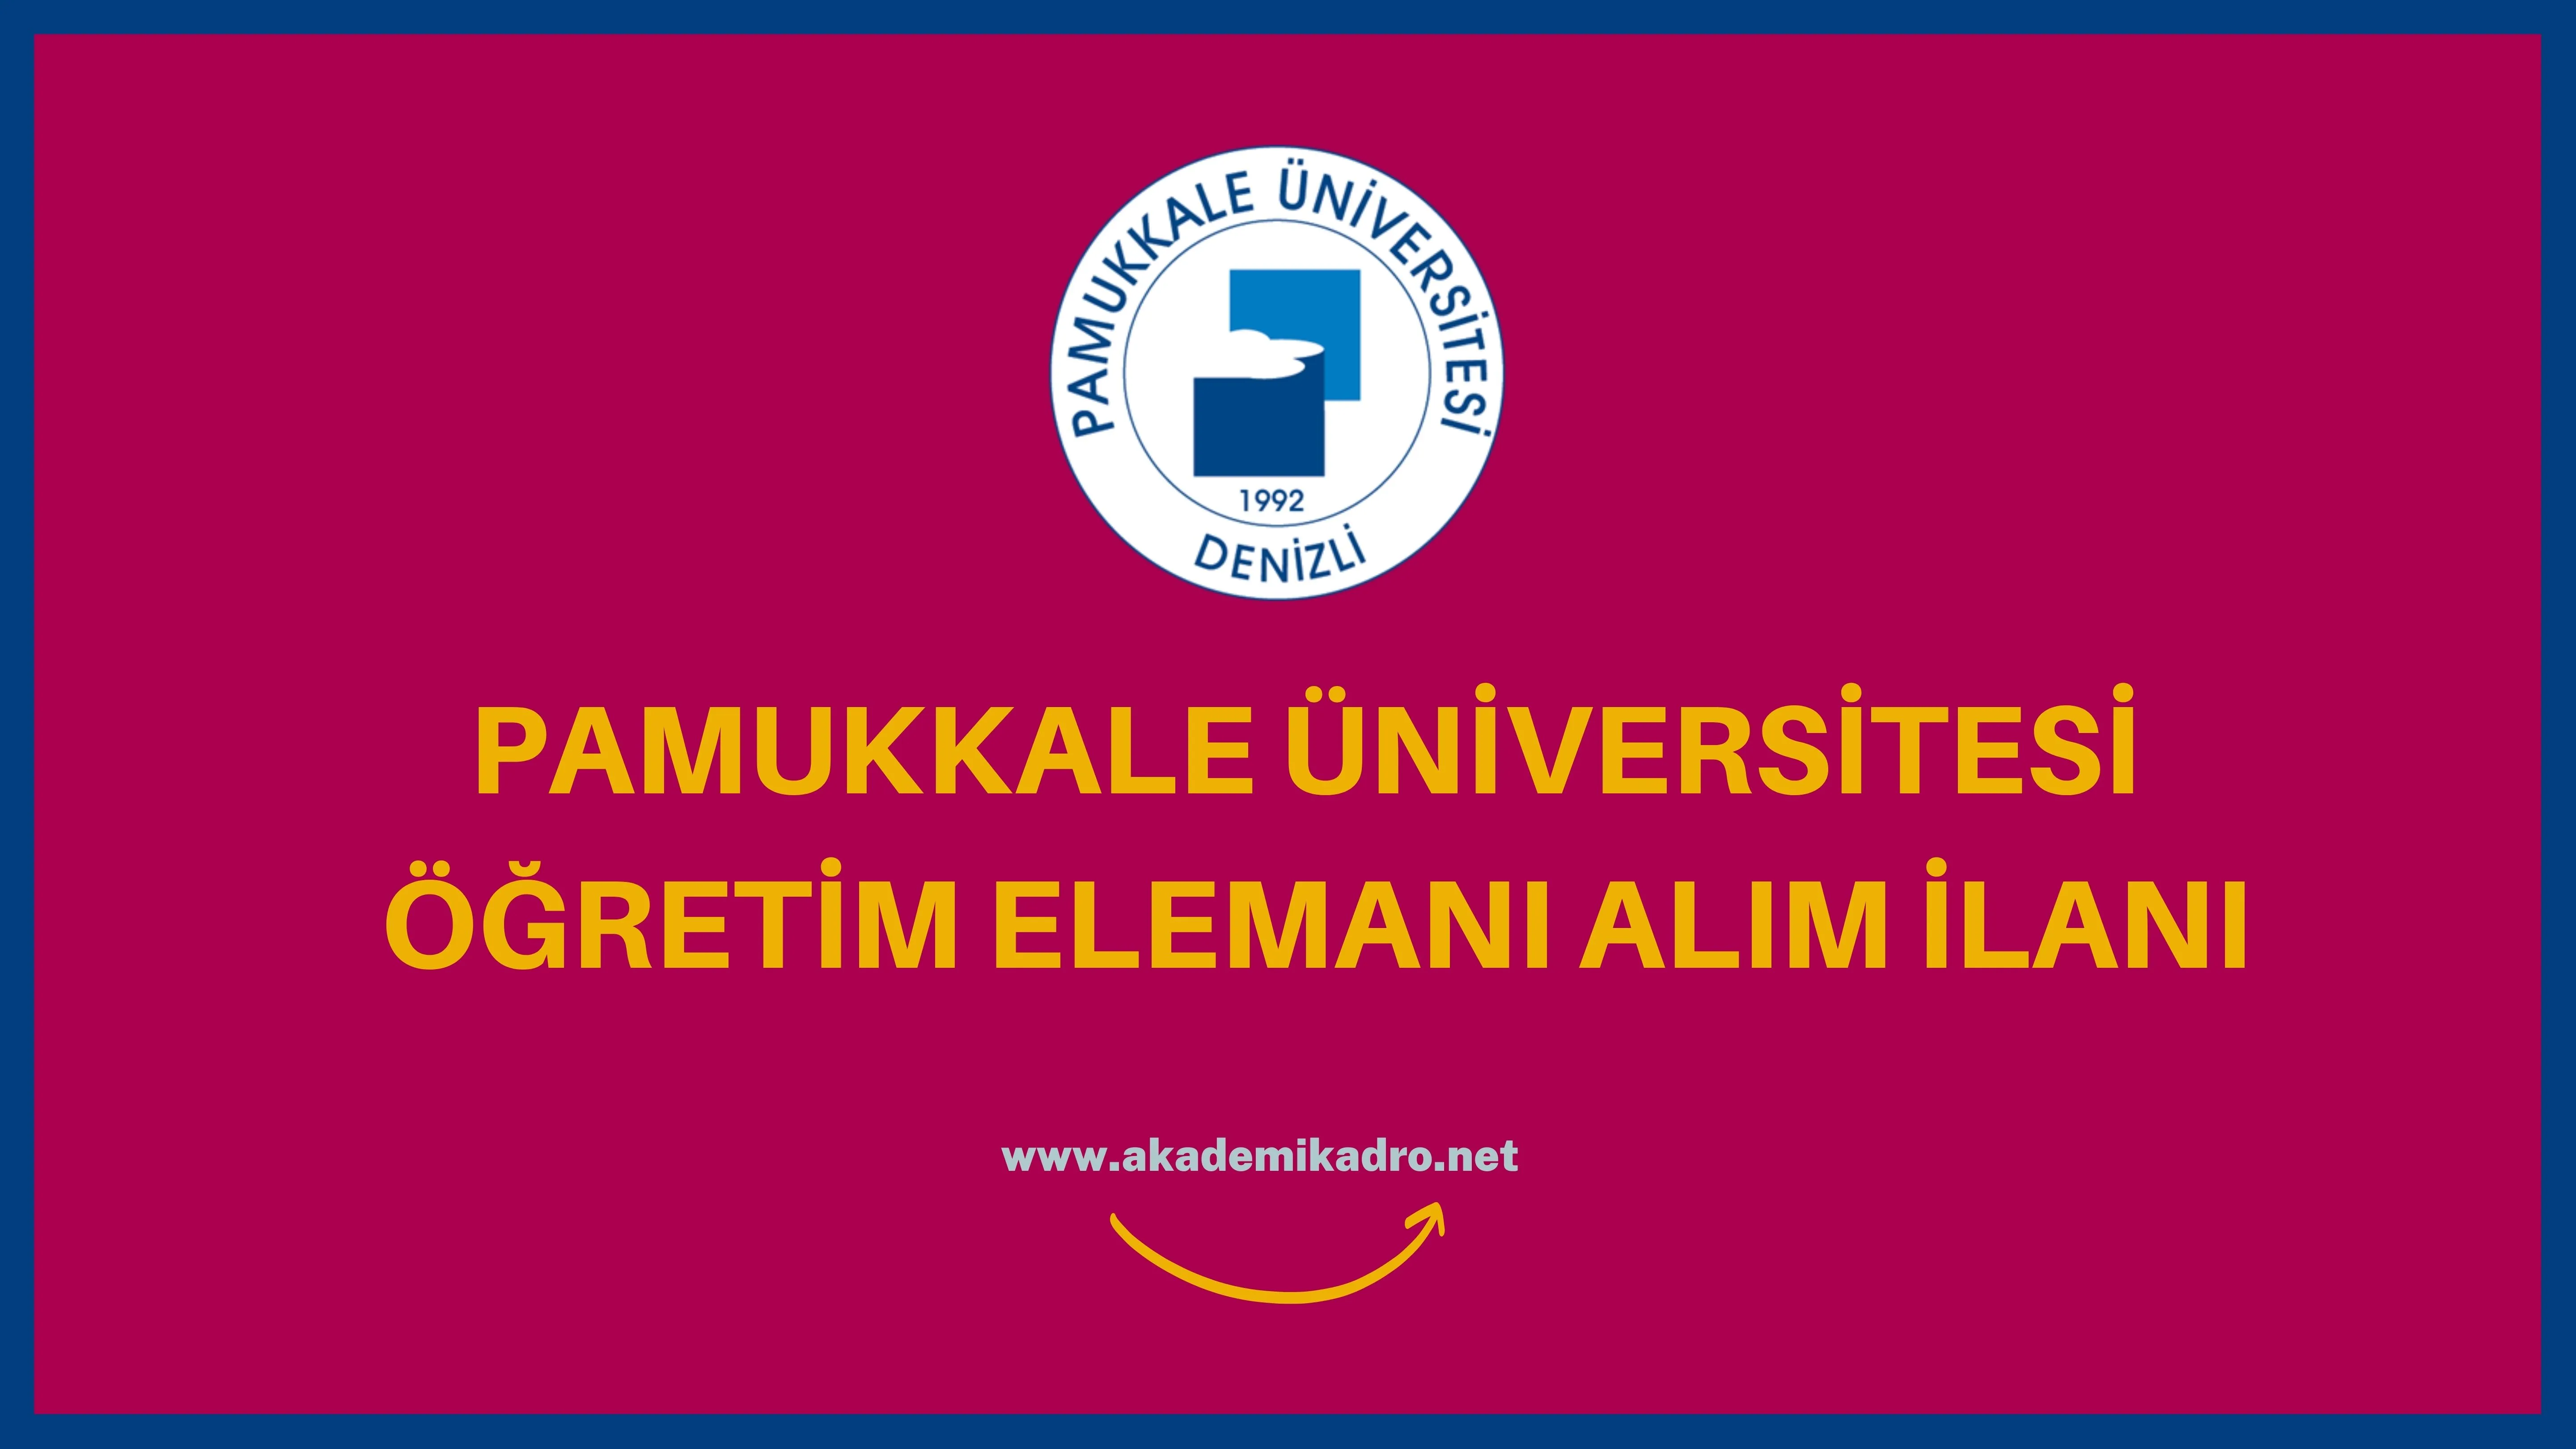 Pamukkale Üniversitesi birçok alandan 97 Öğretim elemanı alacak.